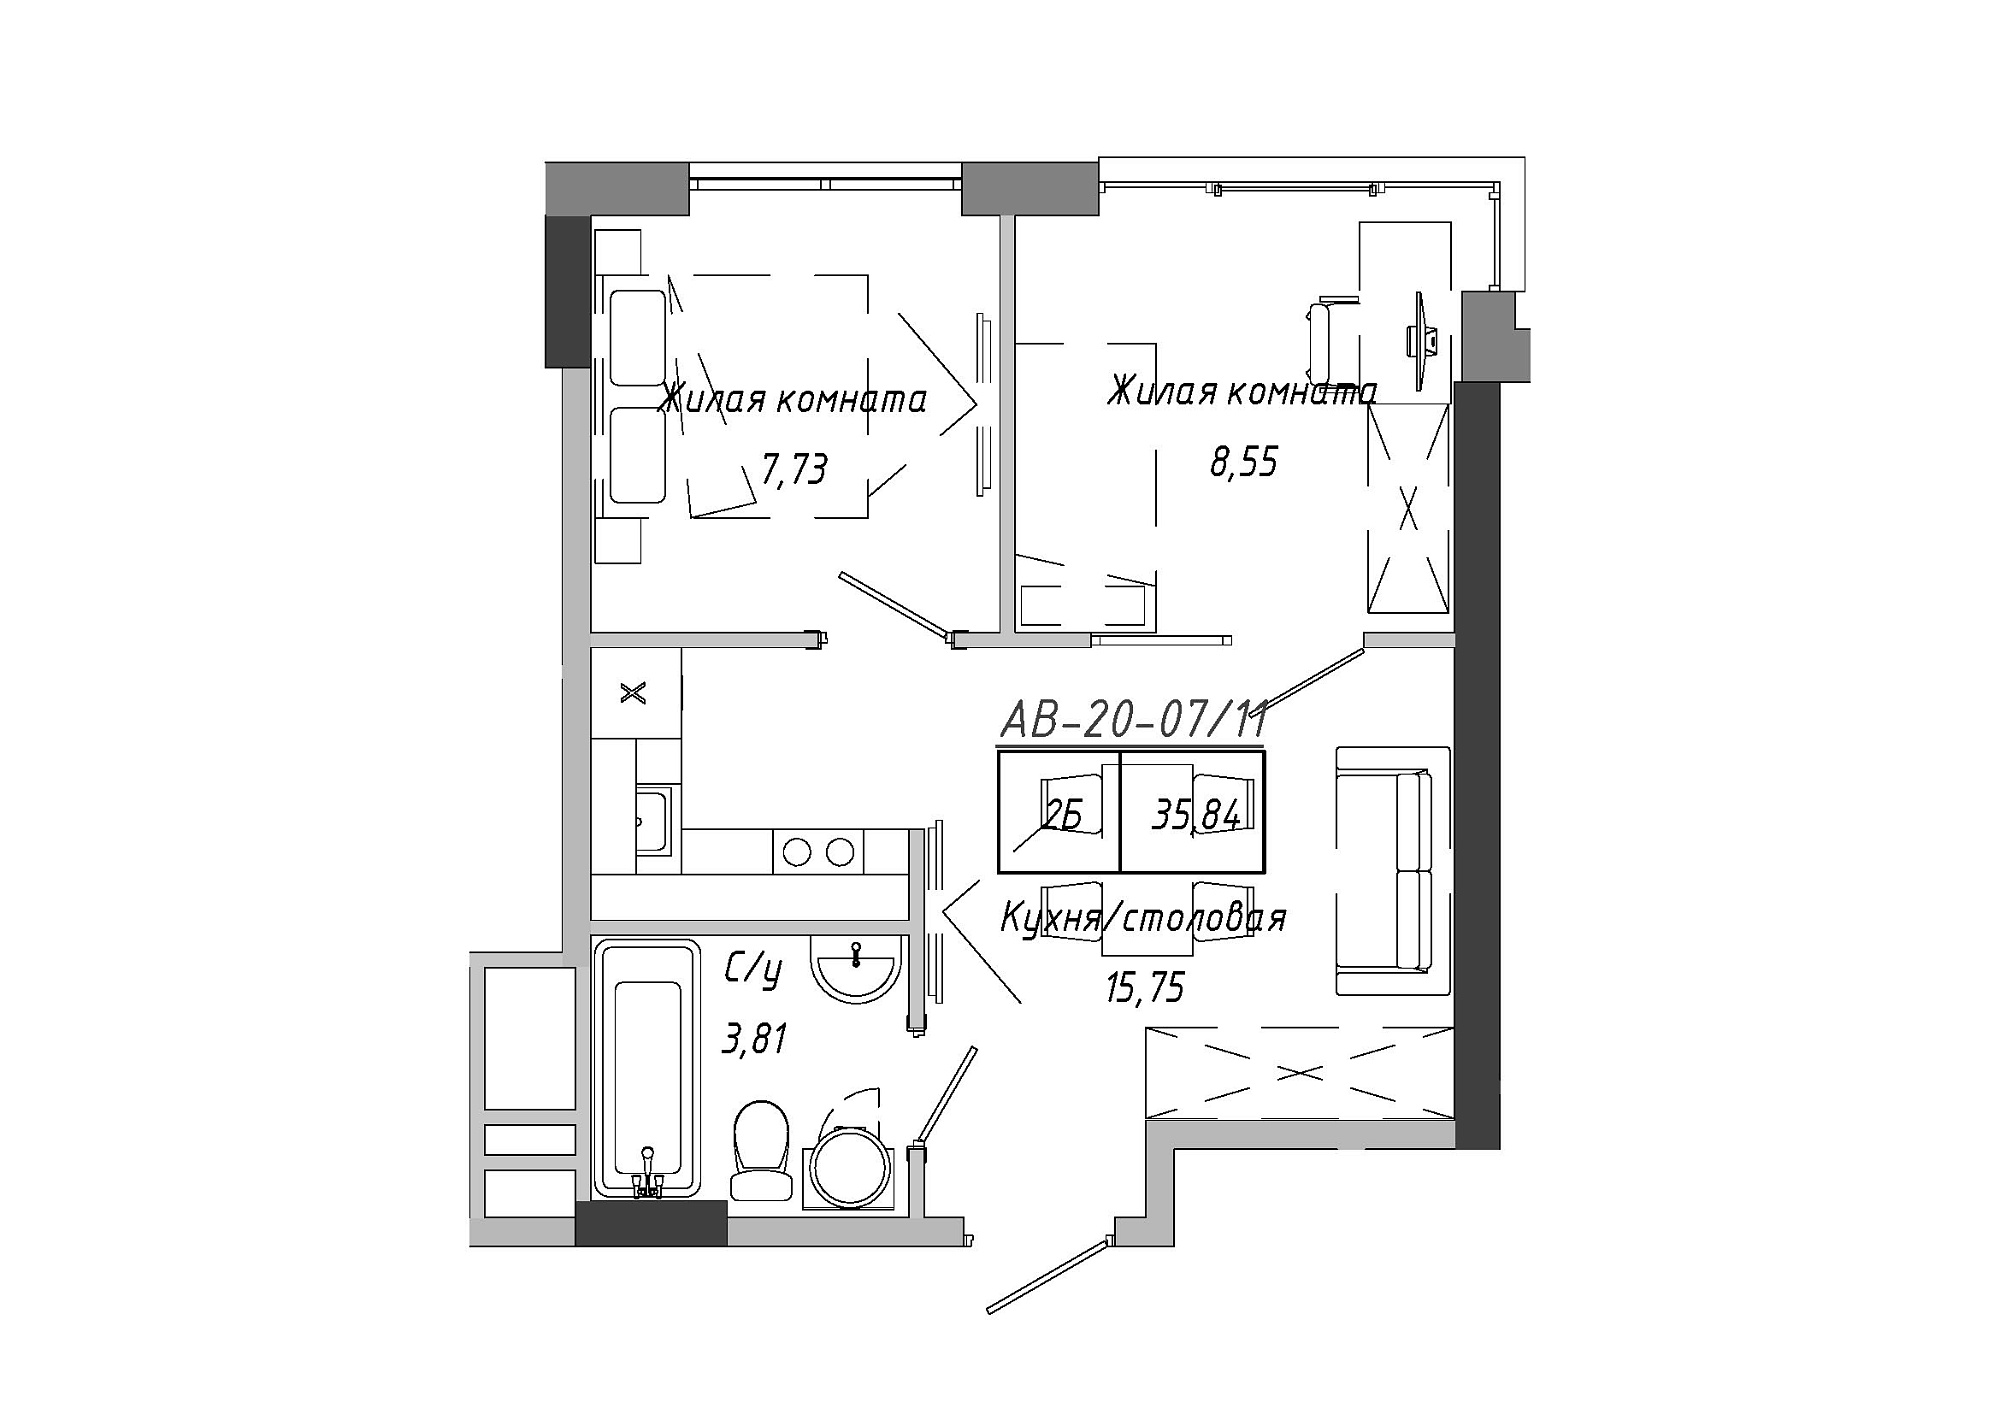 Планировка 2-к квартира площей 36.12м2, AB-20-07/00011.